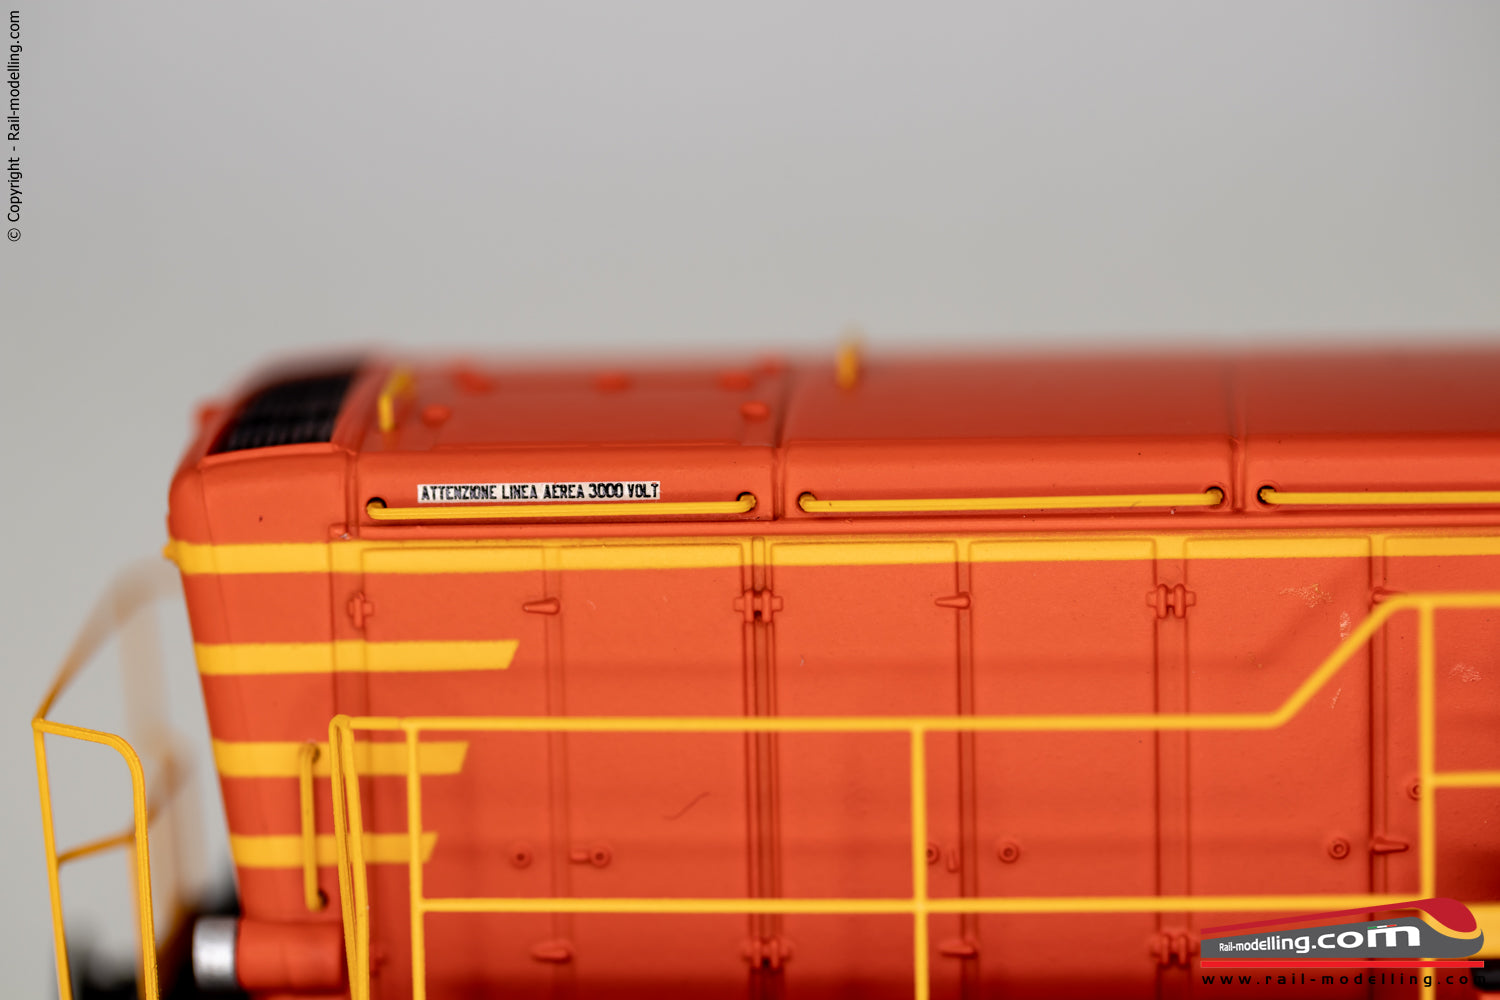 RIVAROSSI HR2795S - H0 1:87 - Locomotiva Diesel da Manovra FS D250 2001 DCC SOUND livrea arancio con corrimano e Parapiede Ep. V